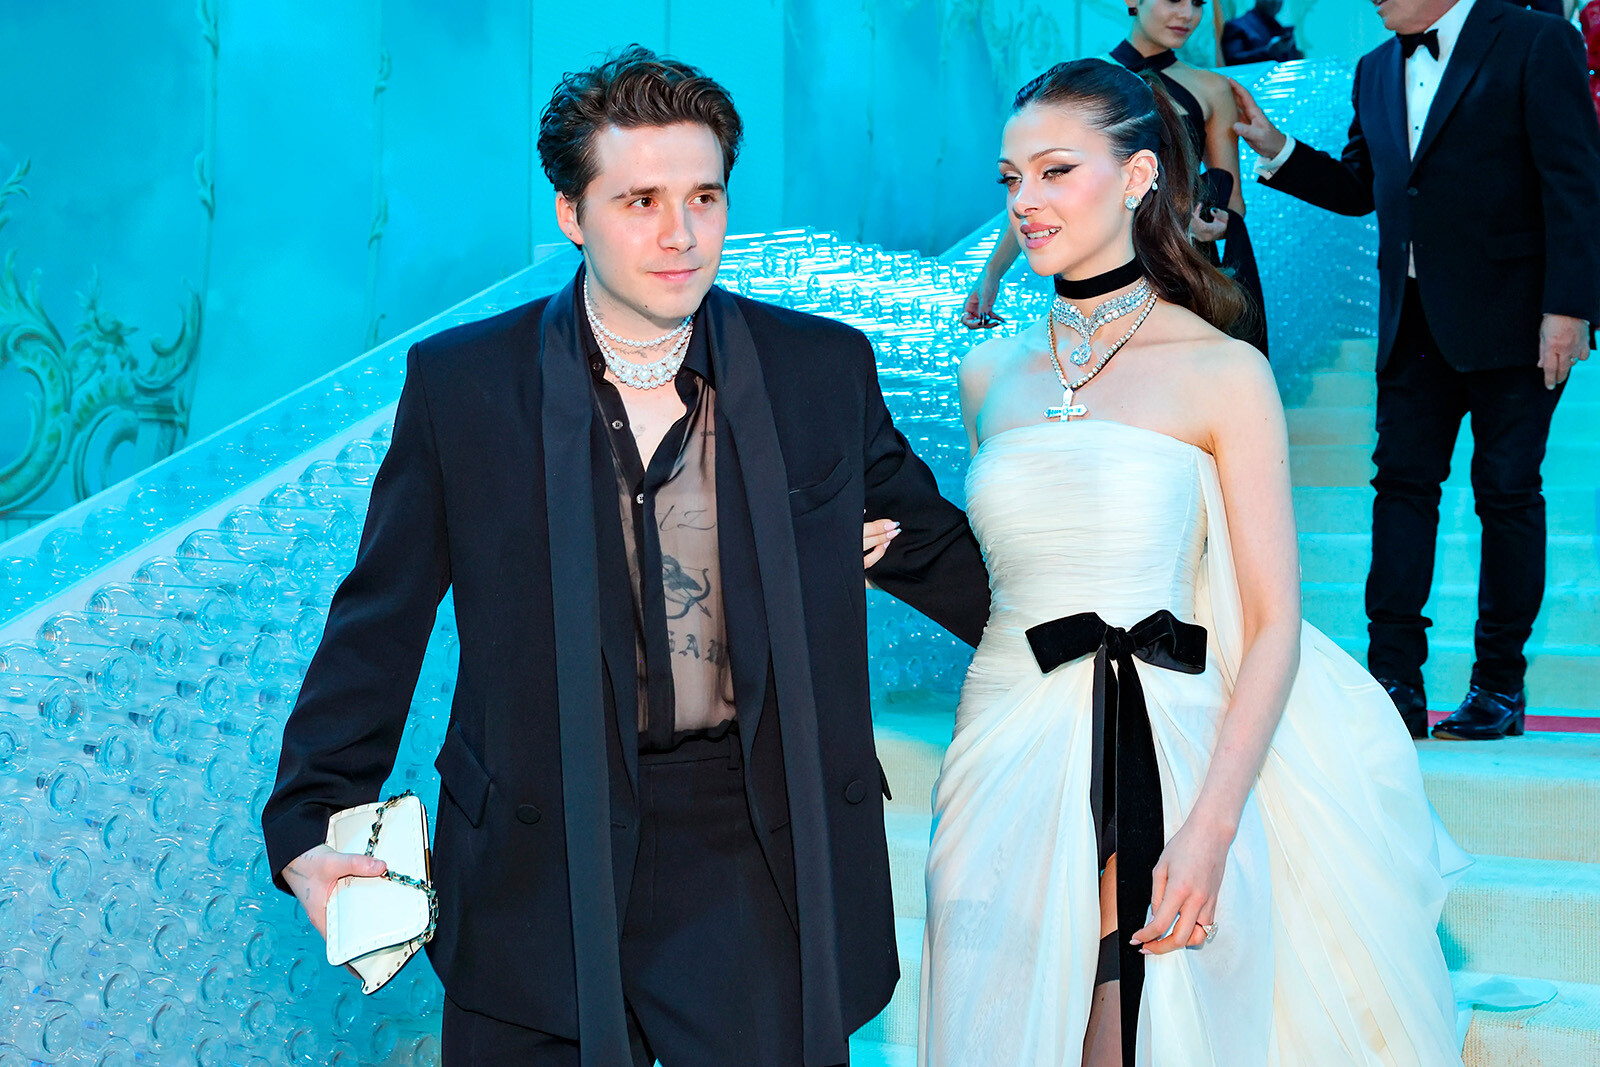 Бруклину Бекхэму и его жене Николе Пельтц отказали во входе в парижский ночной клуб на Неделе моды